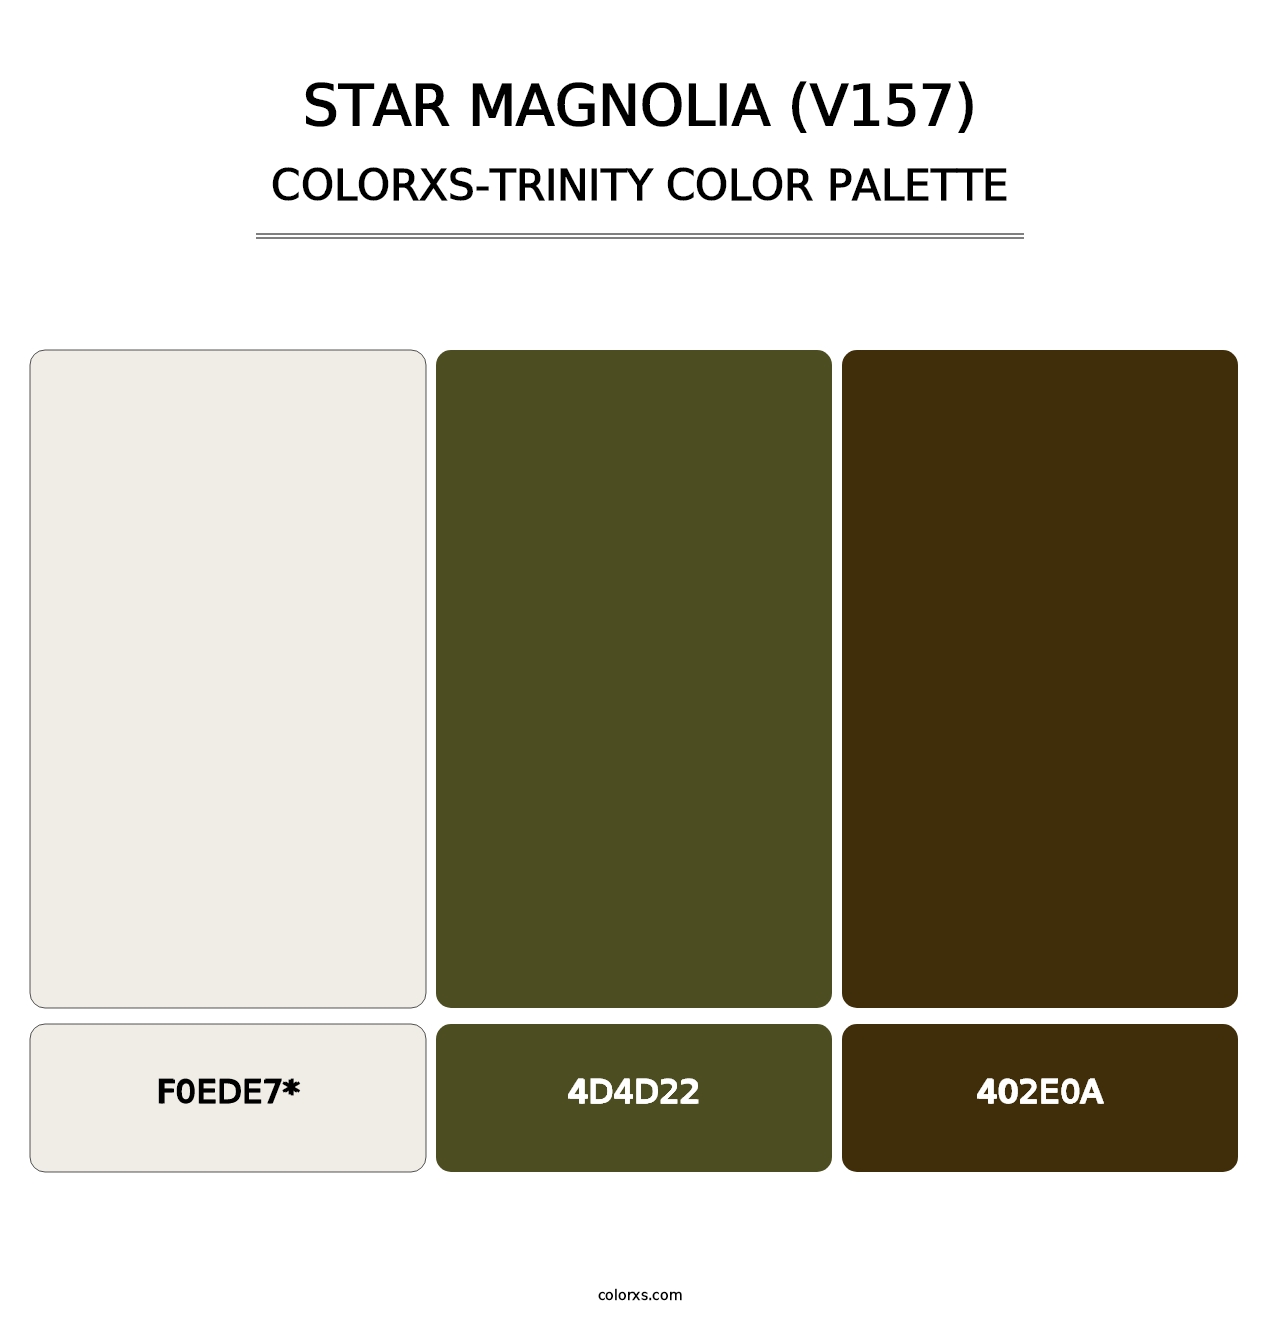 Star Magnolia (V157) - Colorxs Trinity Palette